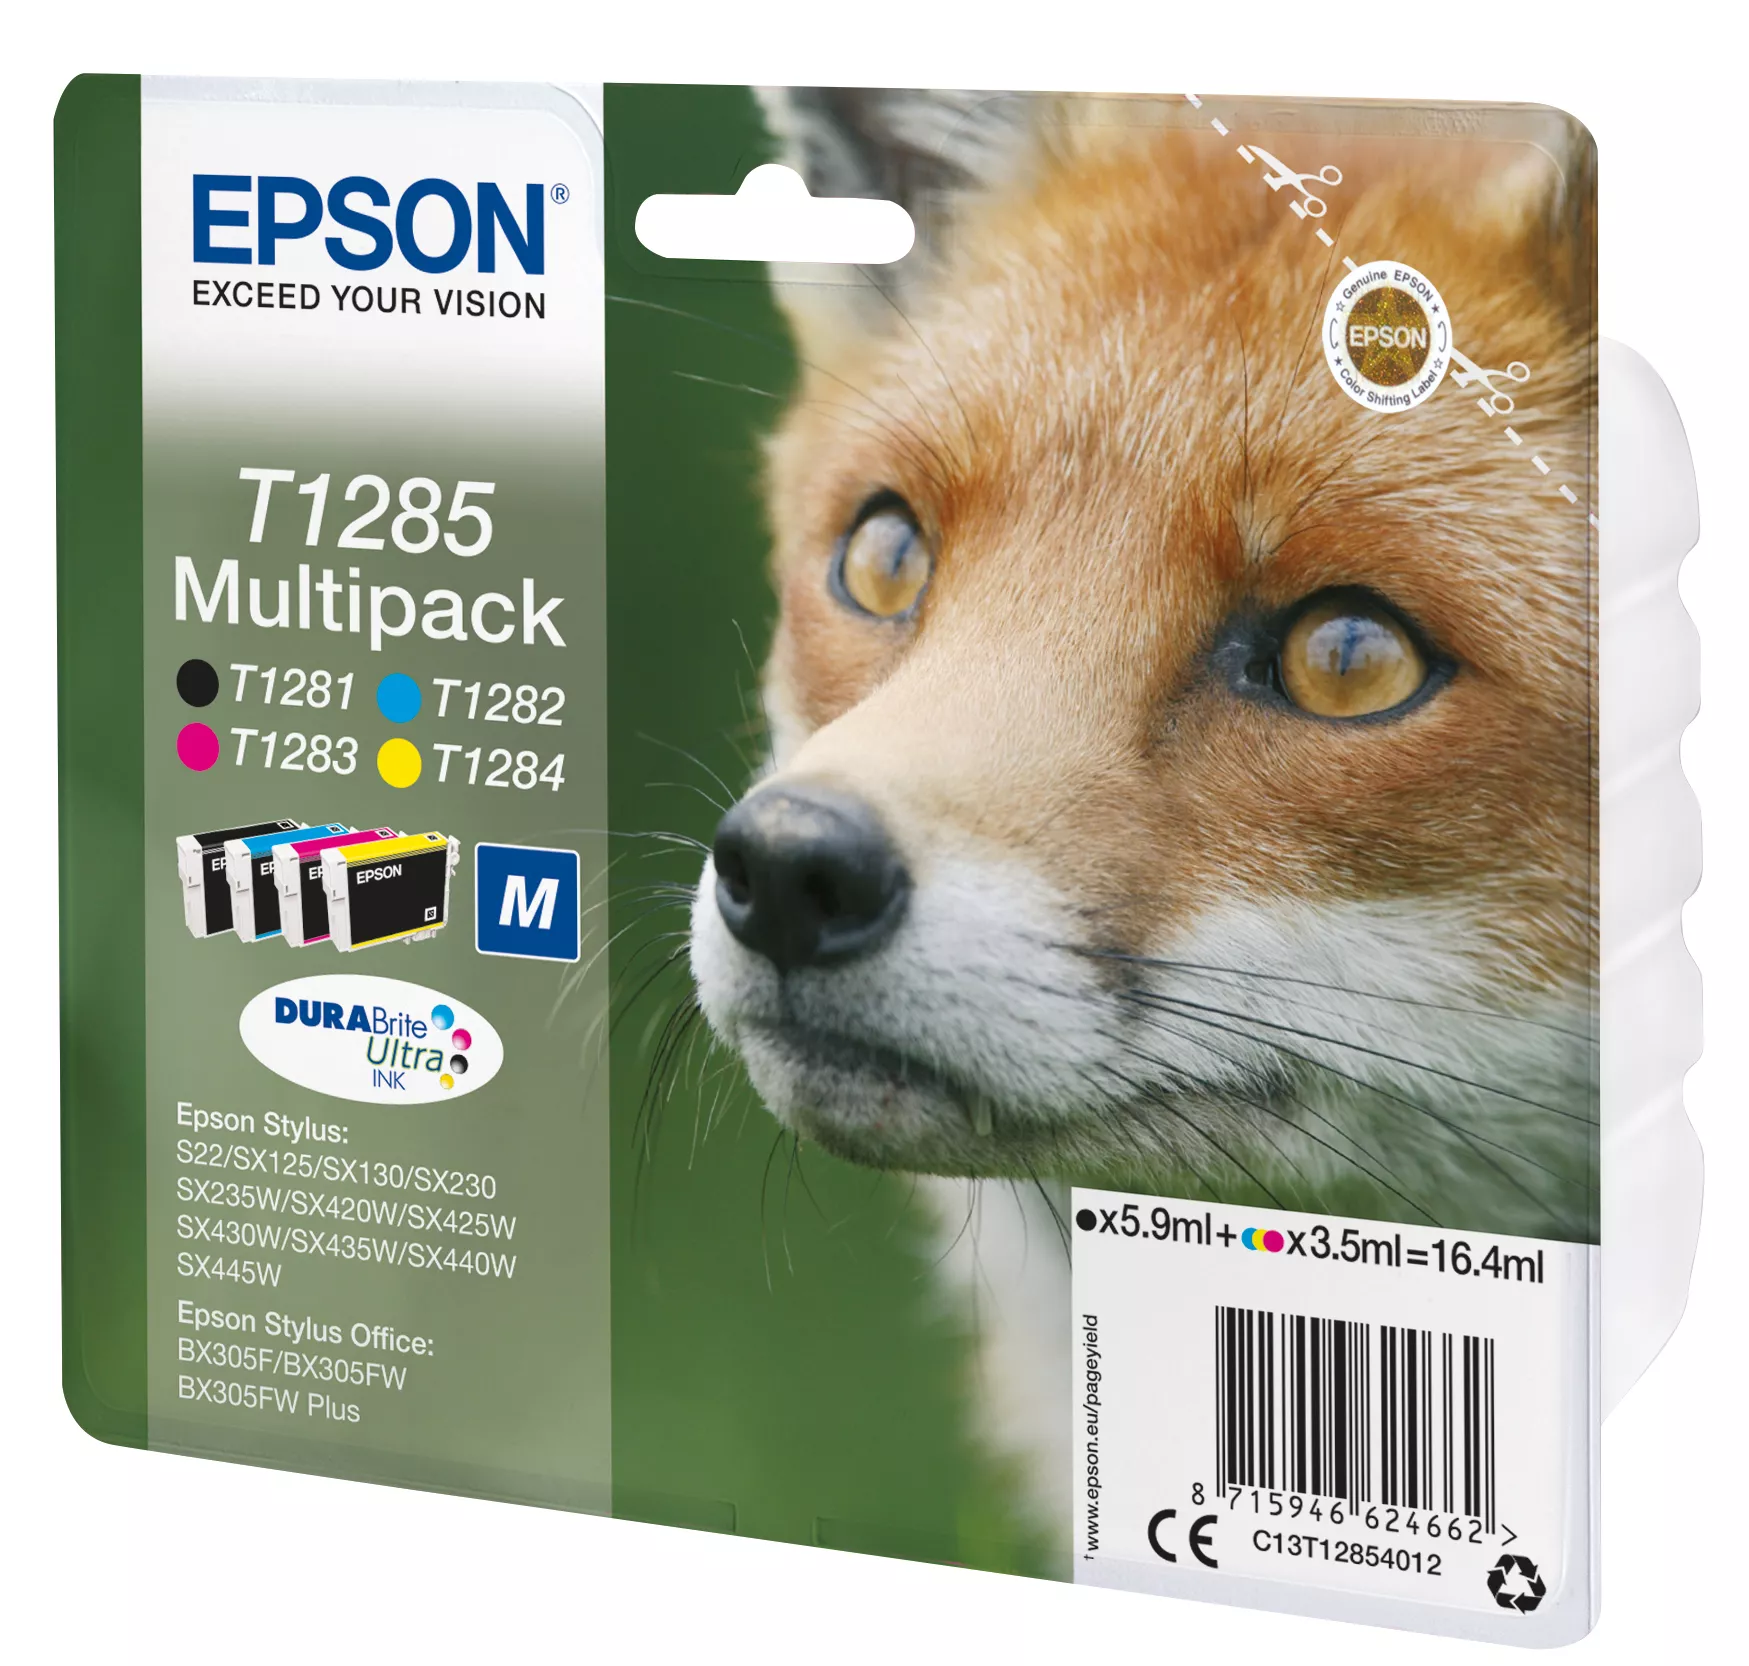 Vente EPSON T1285 cartouche d encre noir et tricolore Epson au meilleur prix - visuel 2